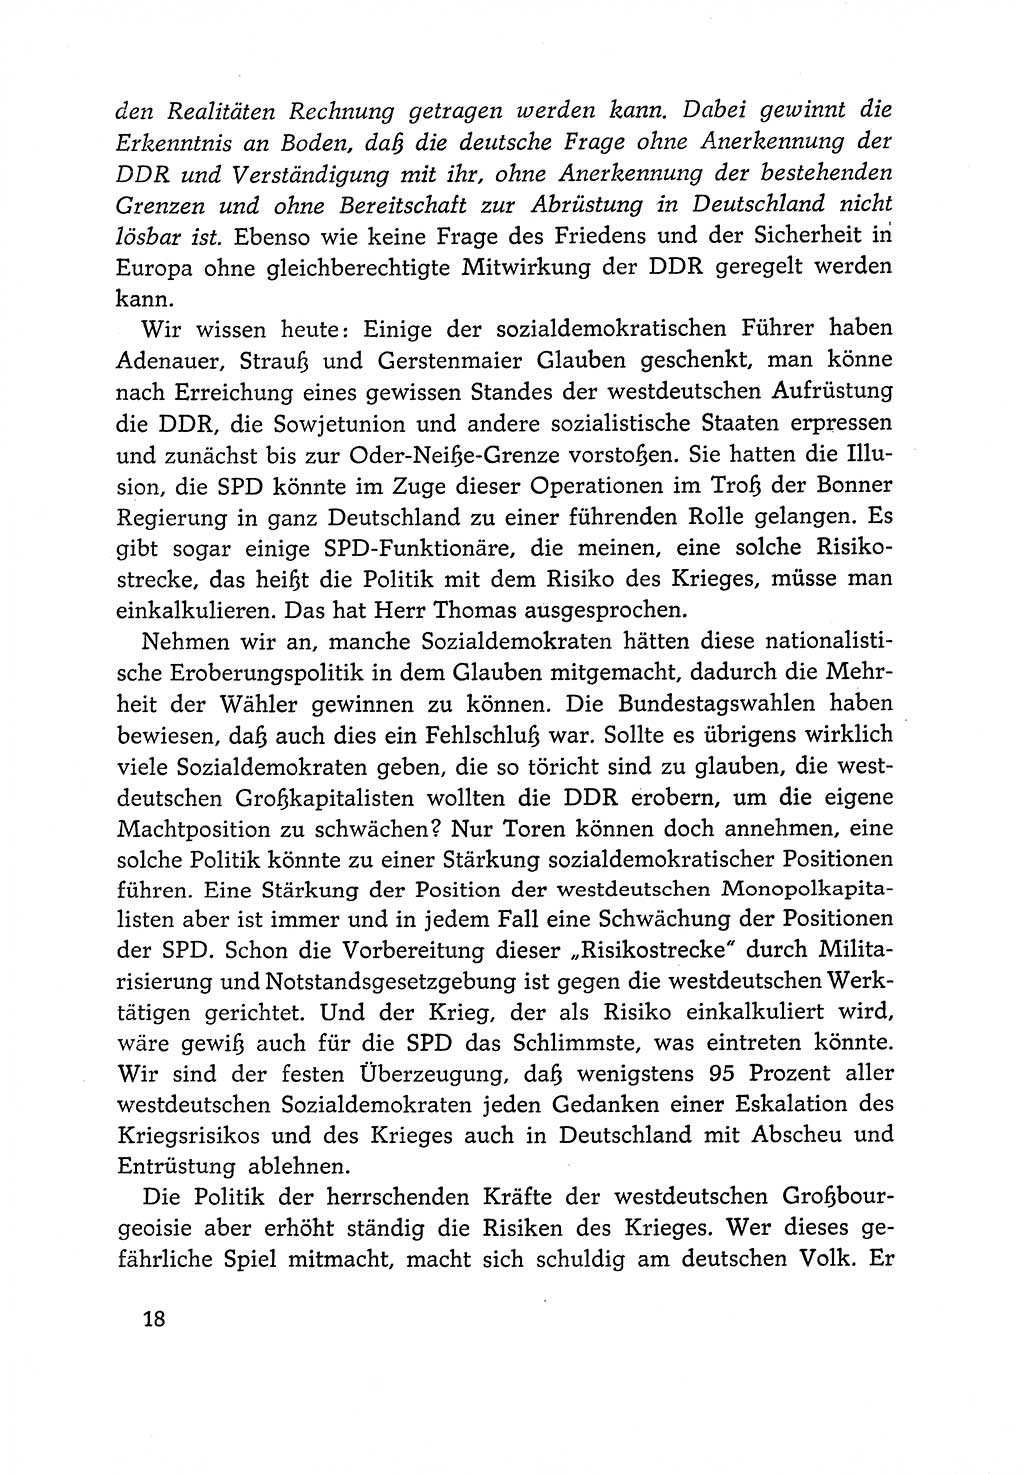 Dokumente der Sozialistischen Einheitspartei Deutschlands (SED) [Deutsche Demokratische Republik (DDR)] 1966-1967, Seite 18 (Dok. SED DDR 1966-1967, S. 18)